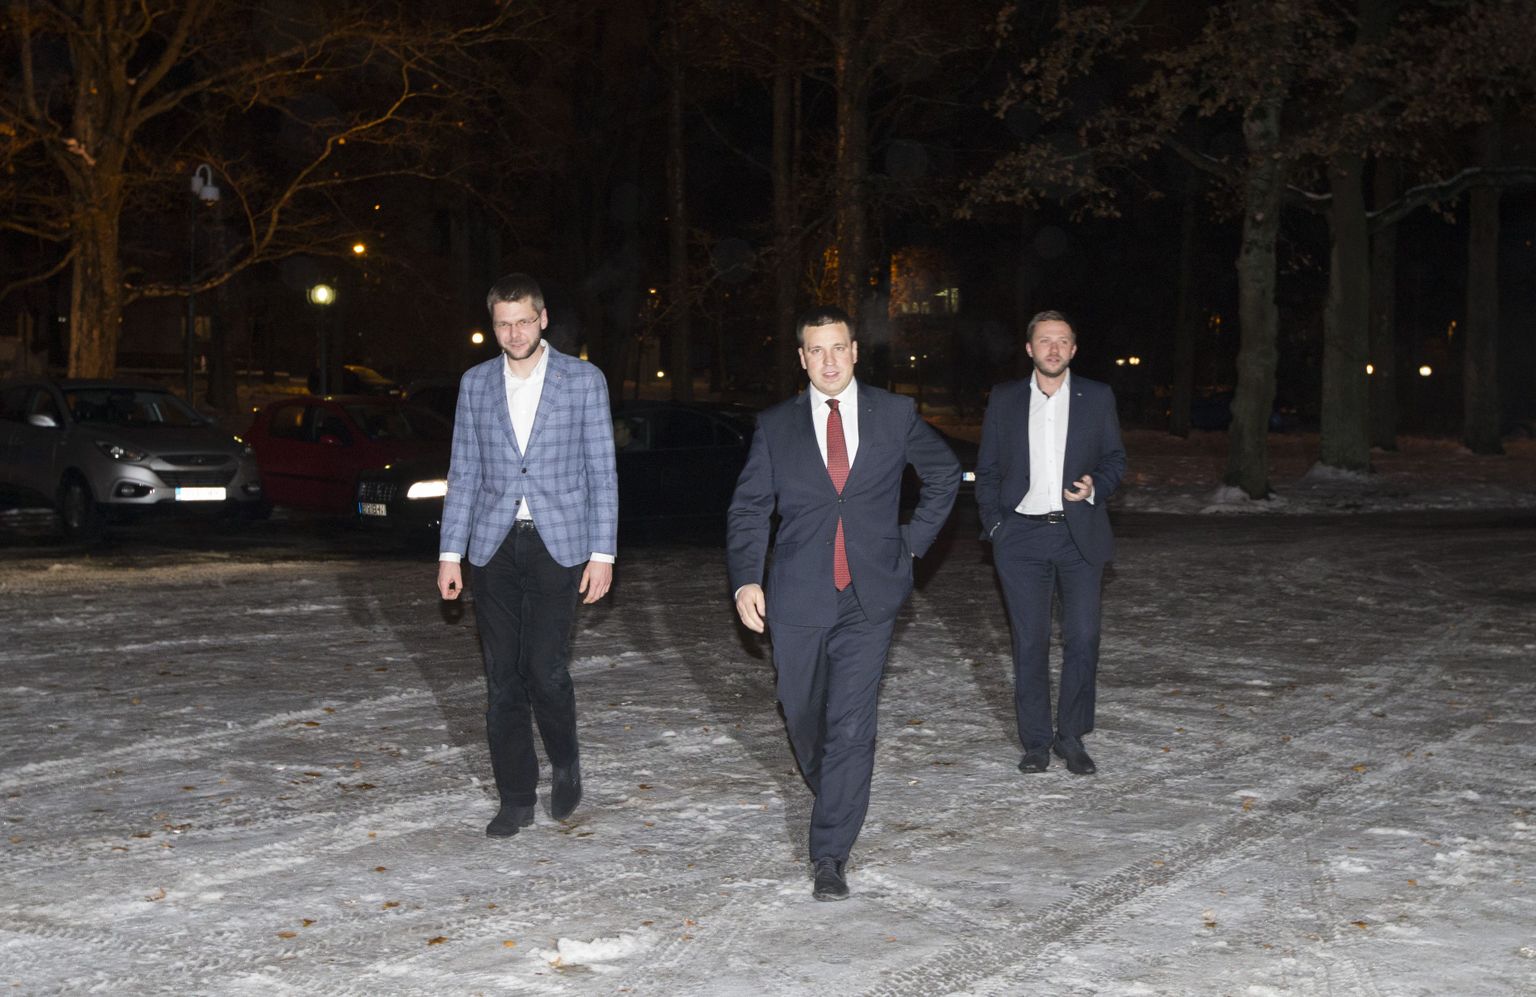 Kolme erakonna juhid – tulevane peaminister Jüri Ratas (keskel) ning nii endisse kui ka loodavasse valitsusse kuuluvad ministrid Jevgeni Ossinovski (vasakul) ja Margus Tsahkna (paremal) – käisid kolmapäeva hilisõhtul üheskoos Kadriorus president Kersti Kaljulaidi jutul.